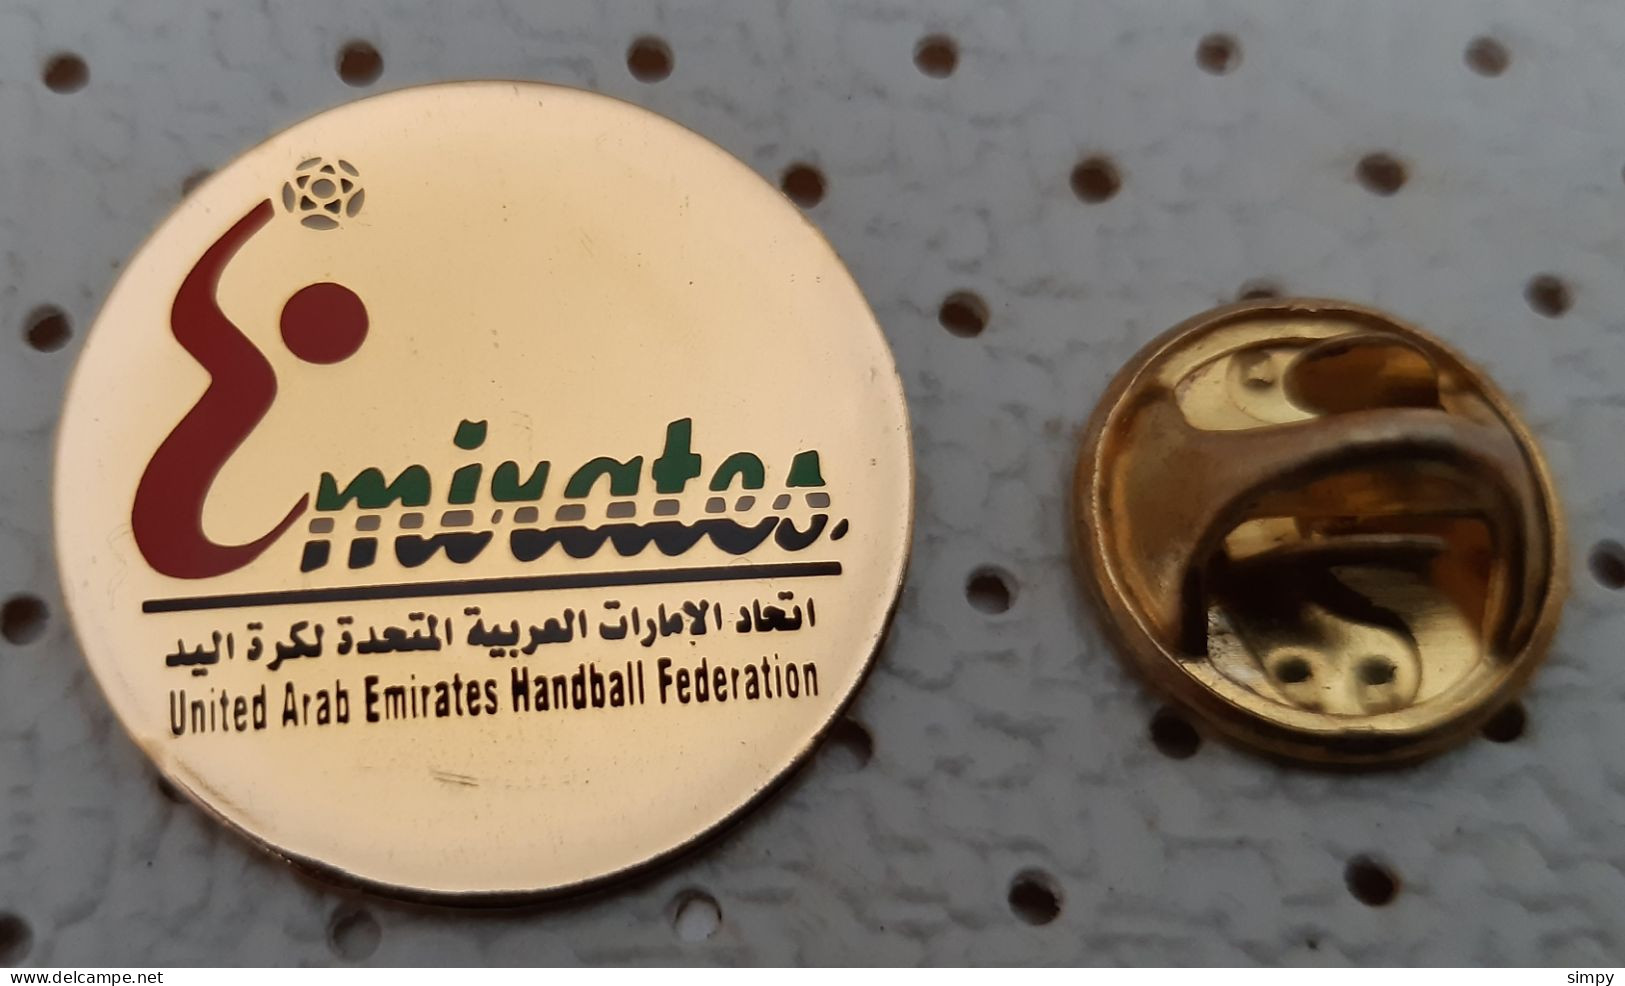 United Arab Emirates Handball Federation Pin Badge - Pallamano